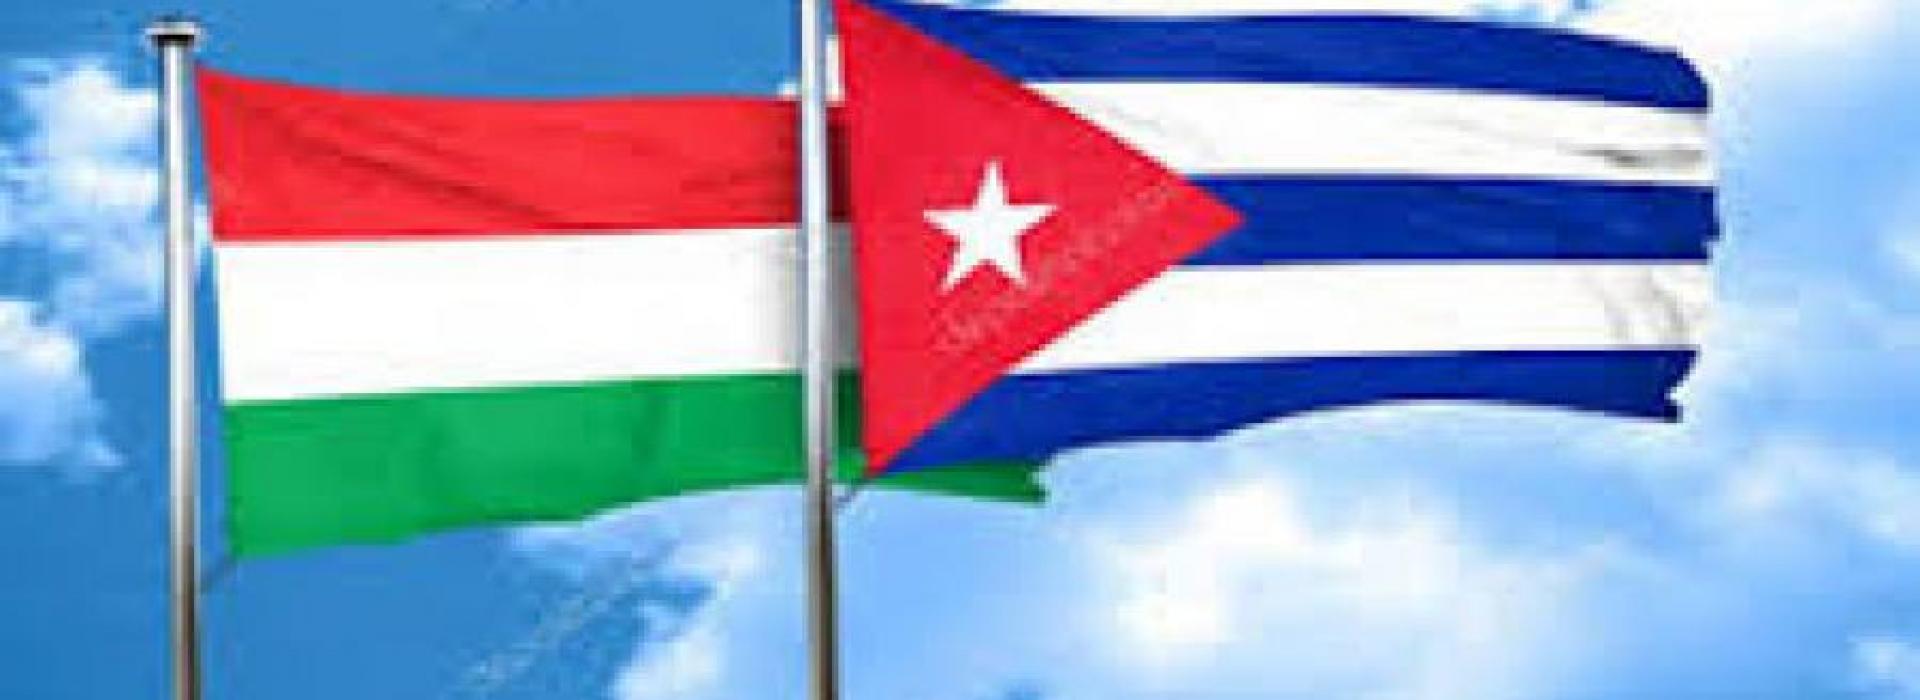 Inició visita oficial a Hungría delegación parlamentaria de Cuba 